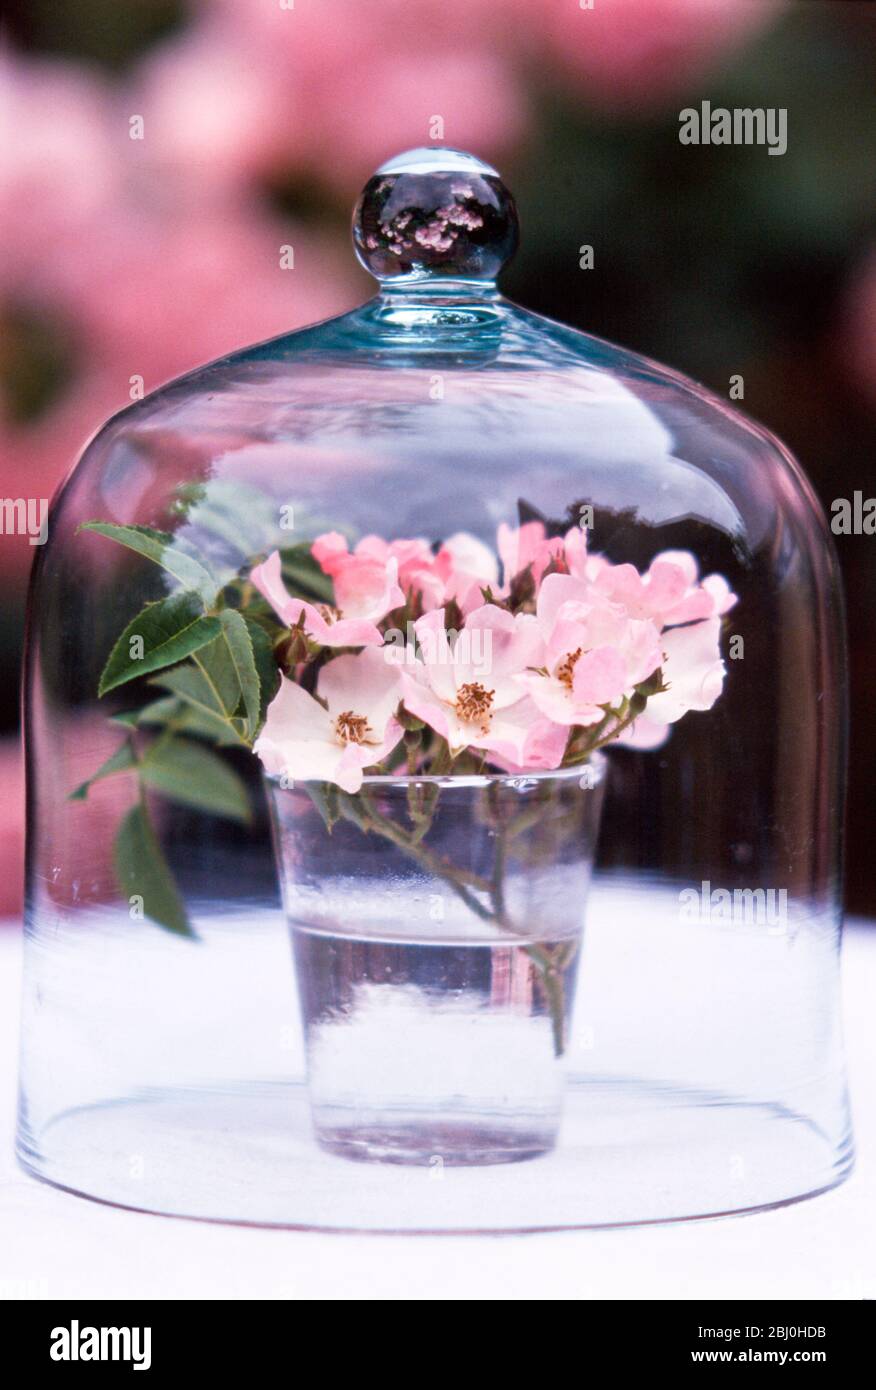 Cristal de rosas de perro rosadas con un solo animal que se muestran bajo la cúpula de cristal - Foto de stock